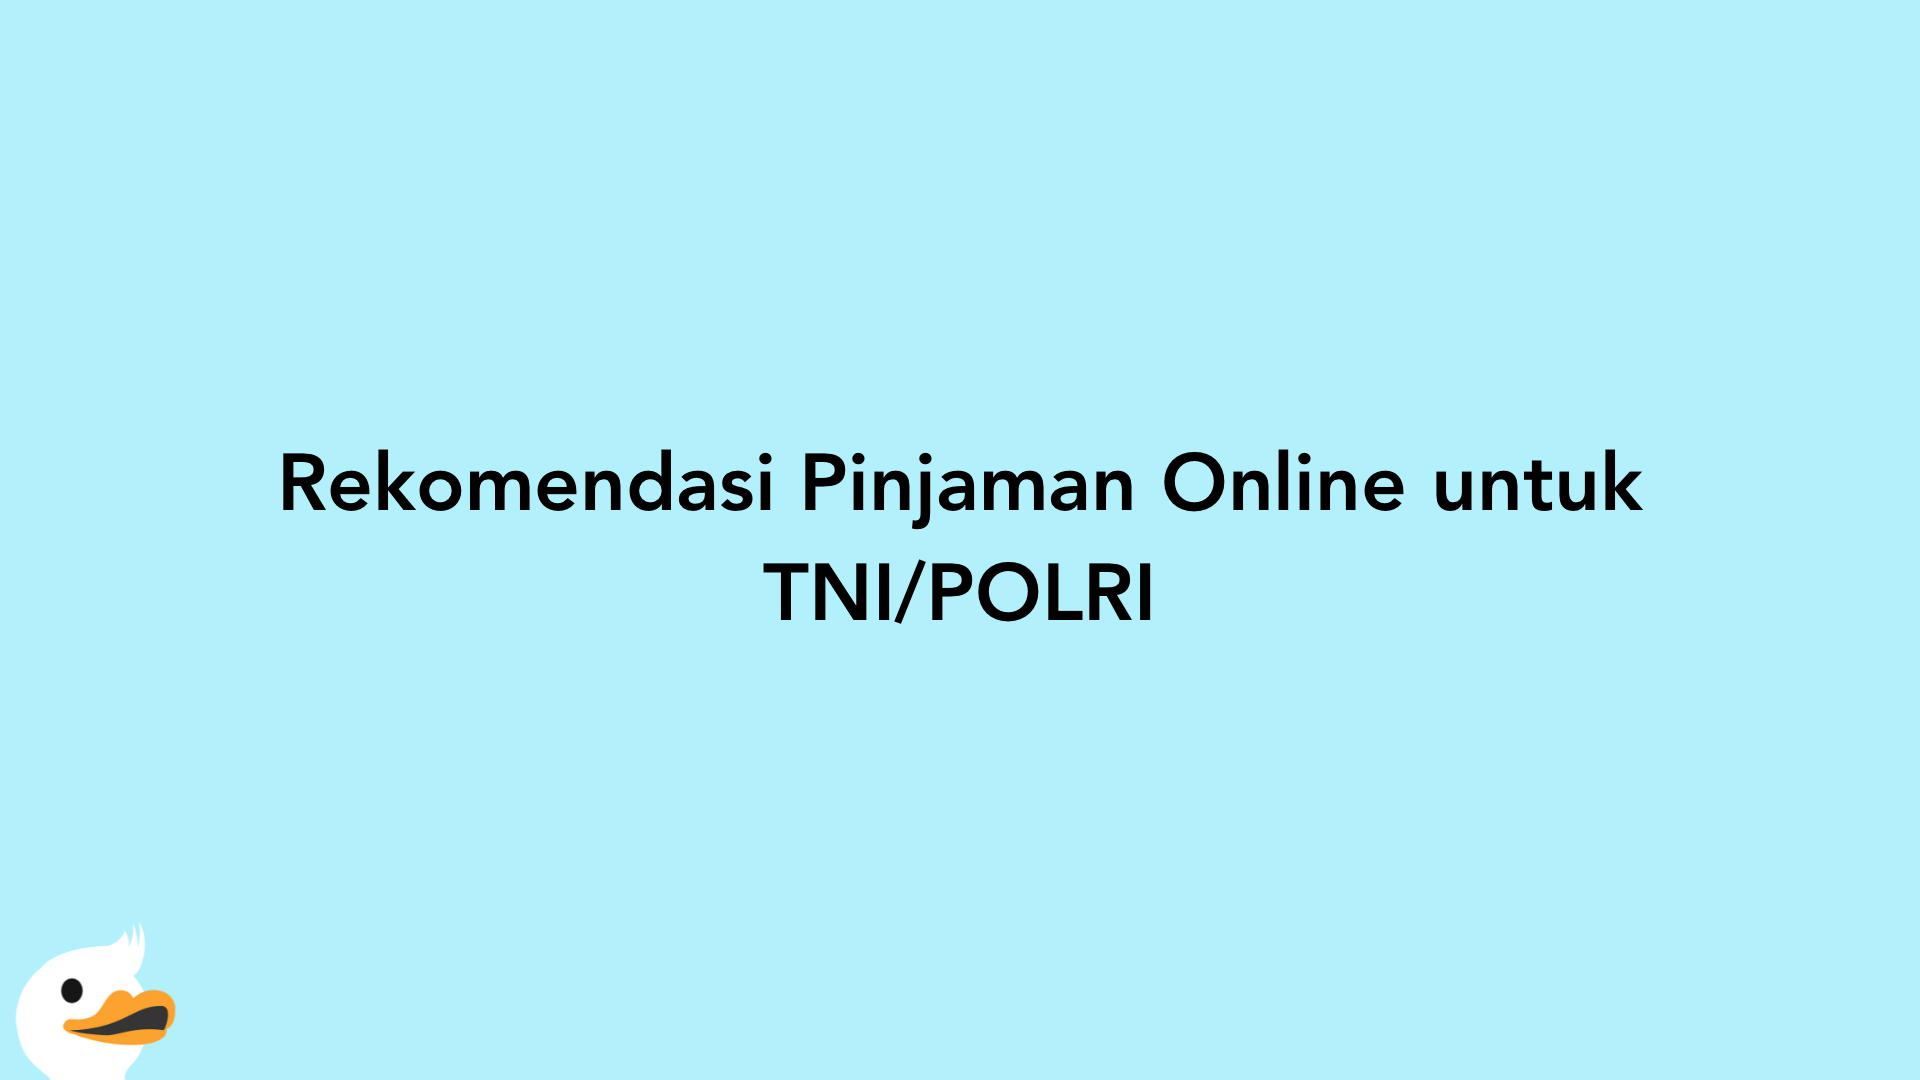 Rekomendasi Pinjaman Online untuk TNI/POLRI